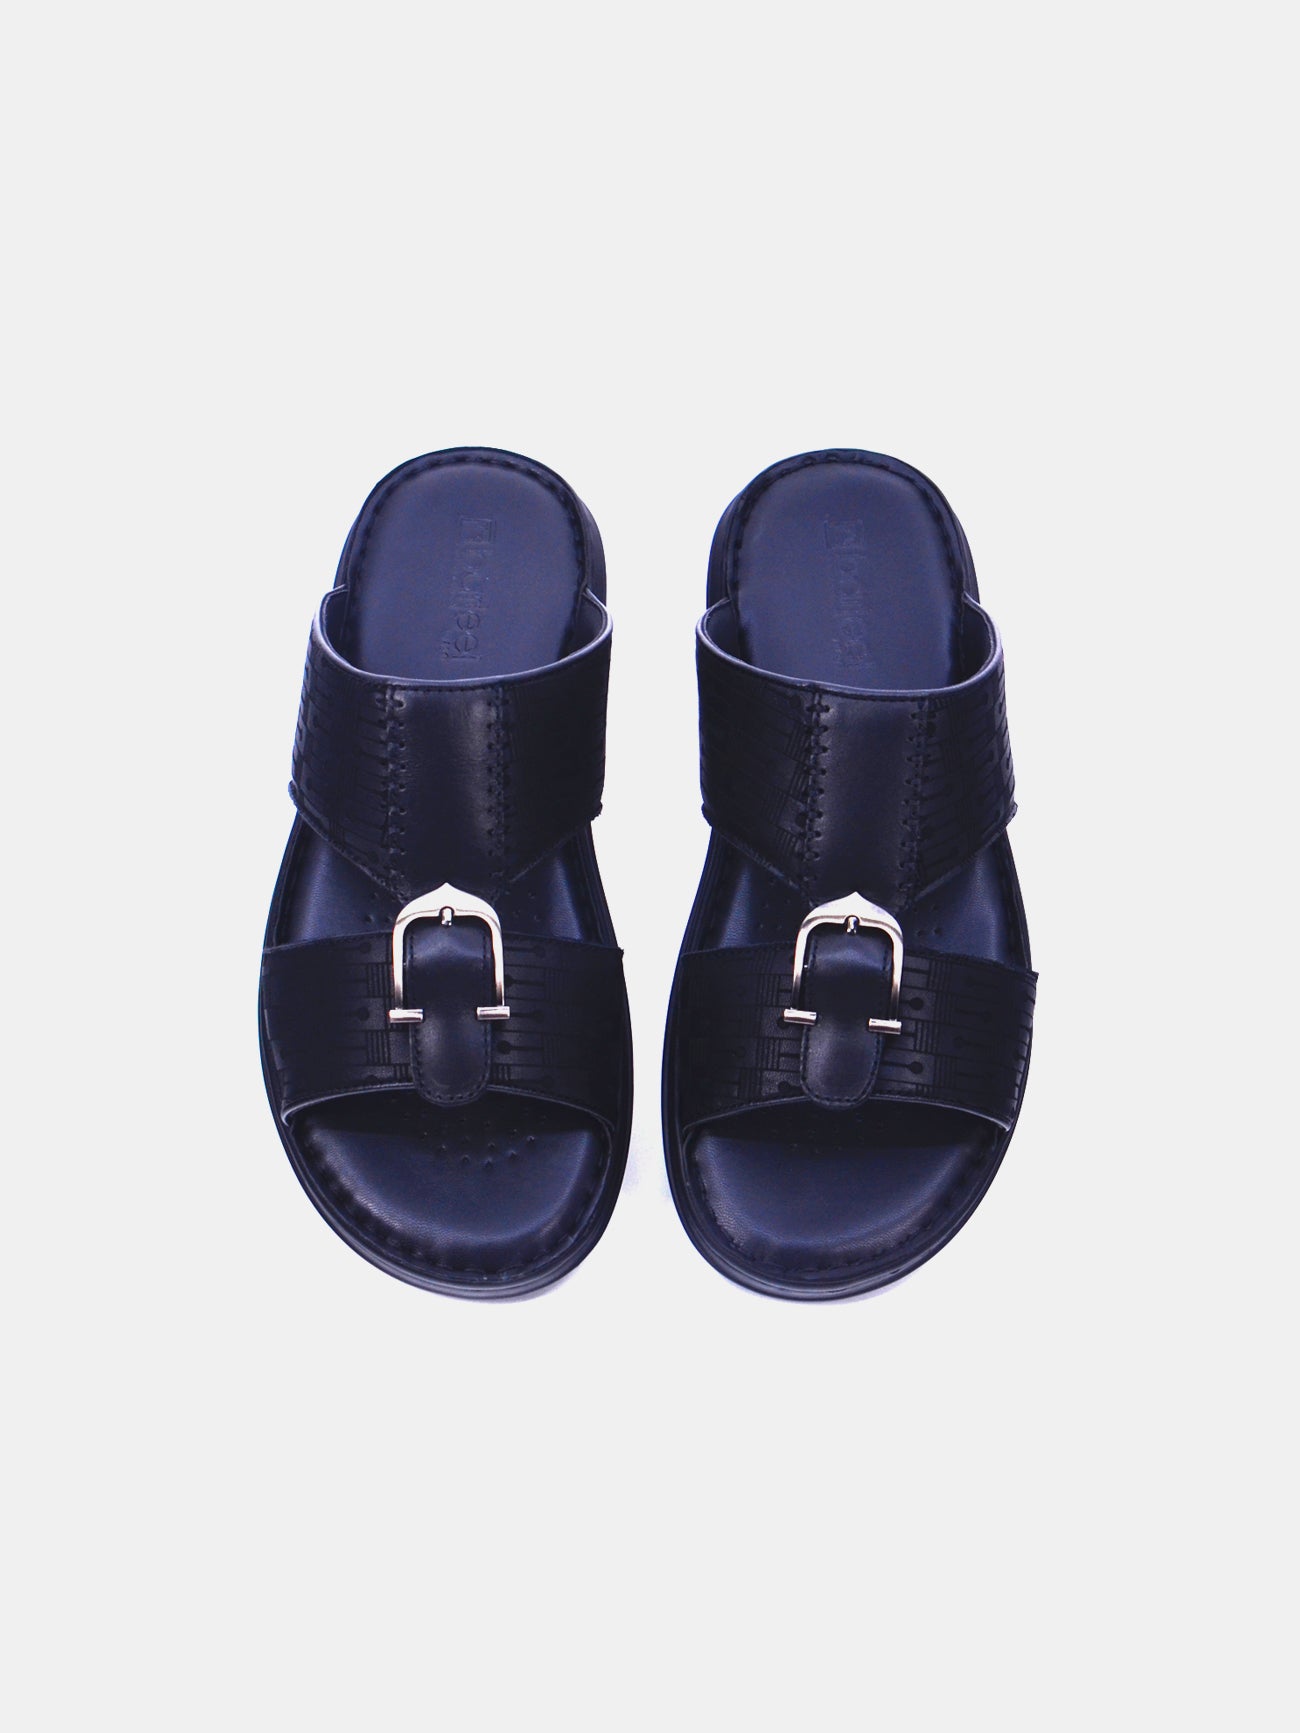 Barjeel Uno 21410-11 Men's Arabic Sandals